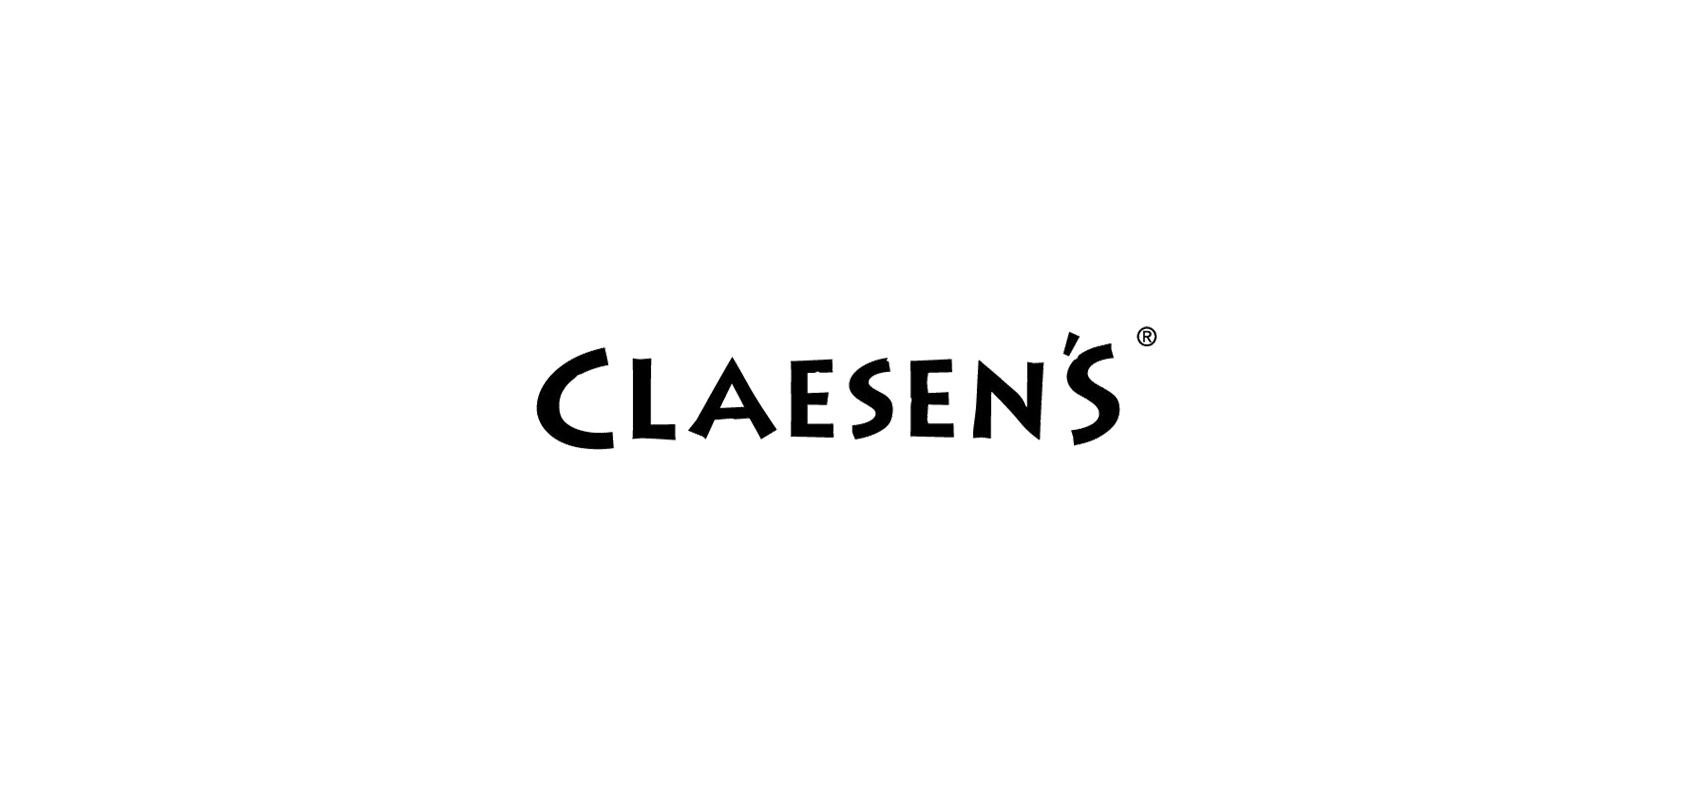 claesens